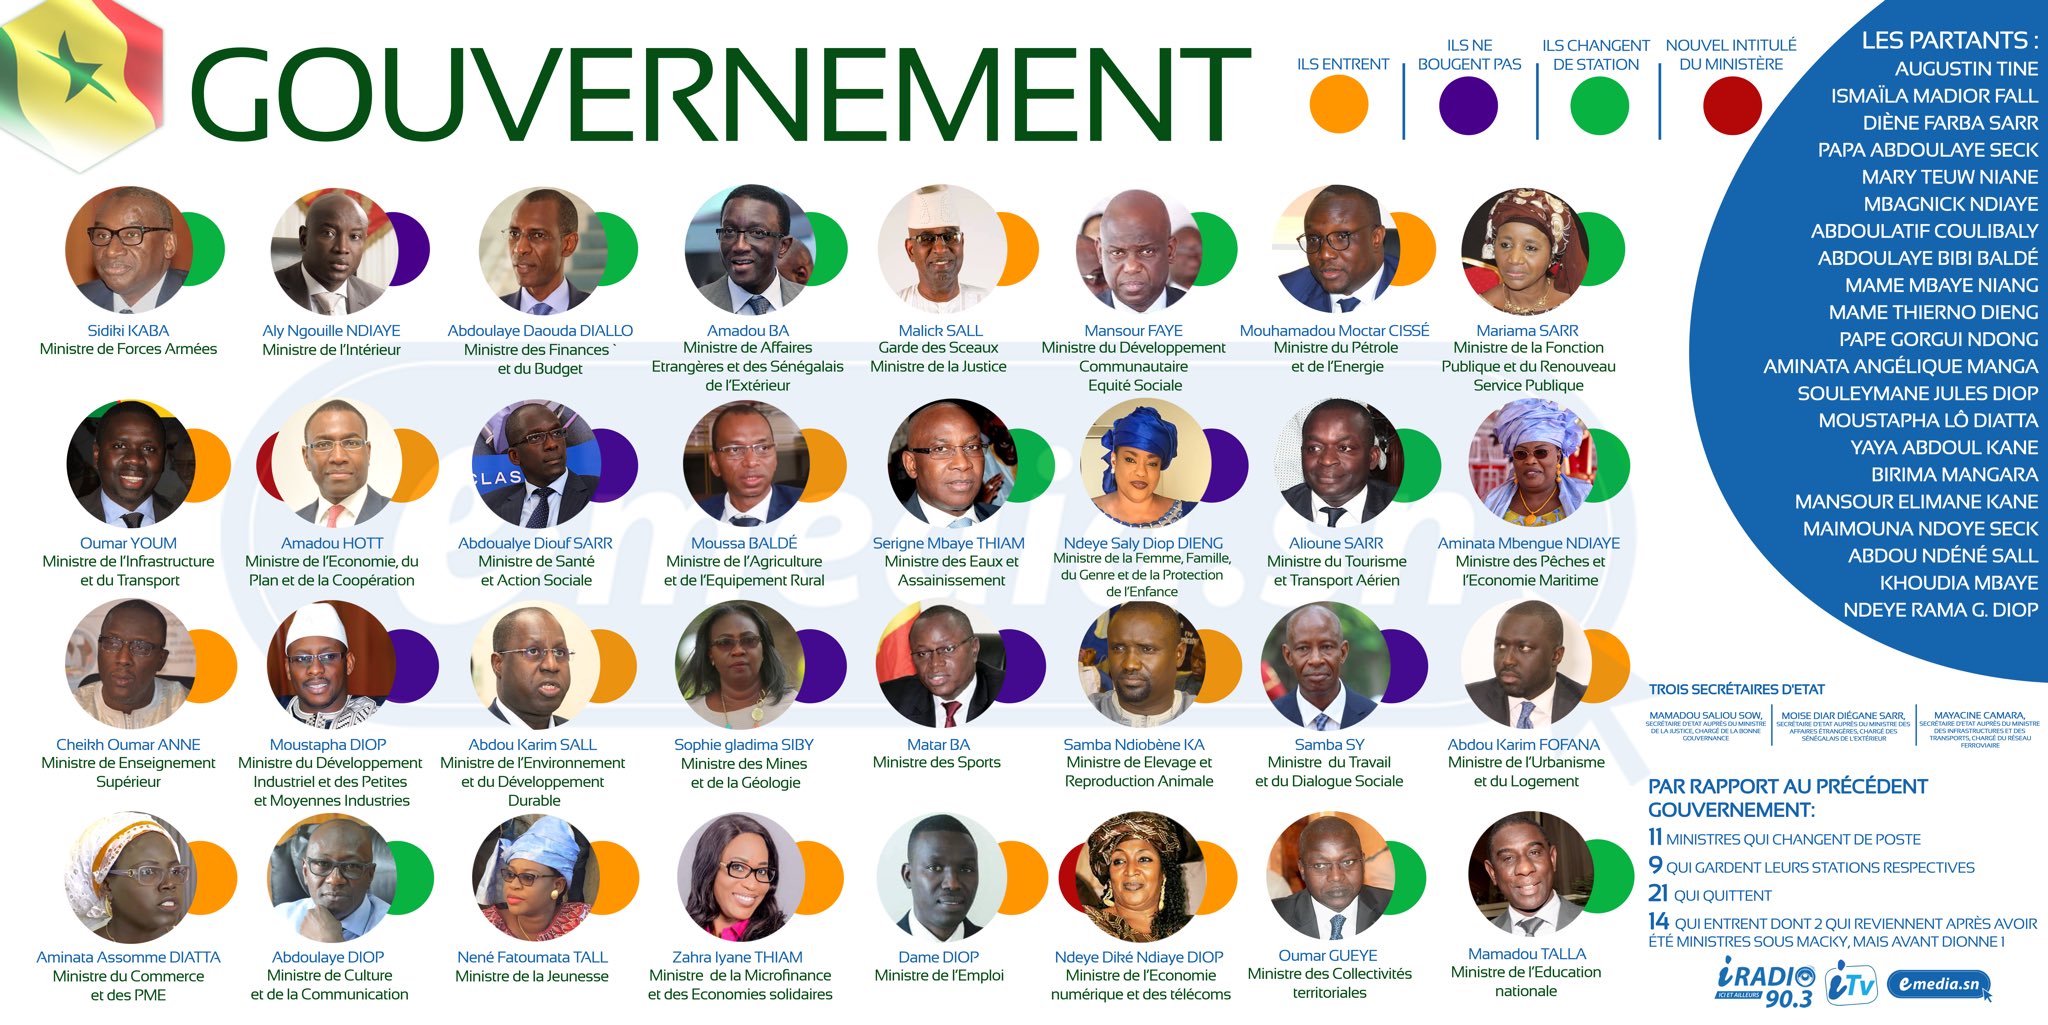 Photo voici les photos de tous les membres du nouveau gouvernement